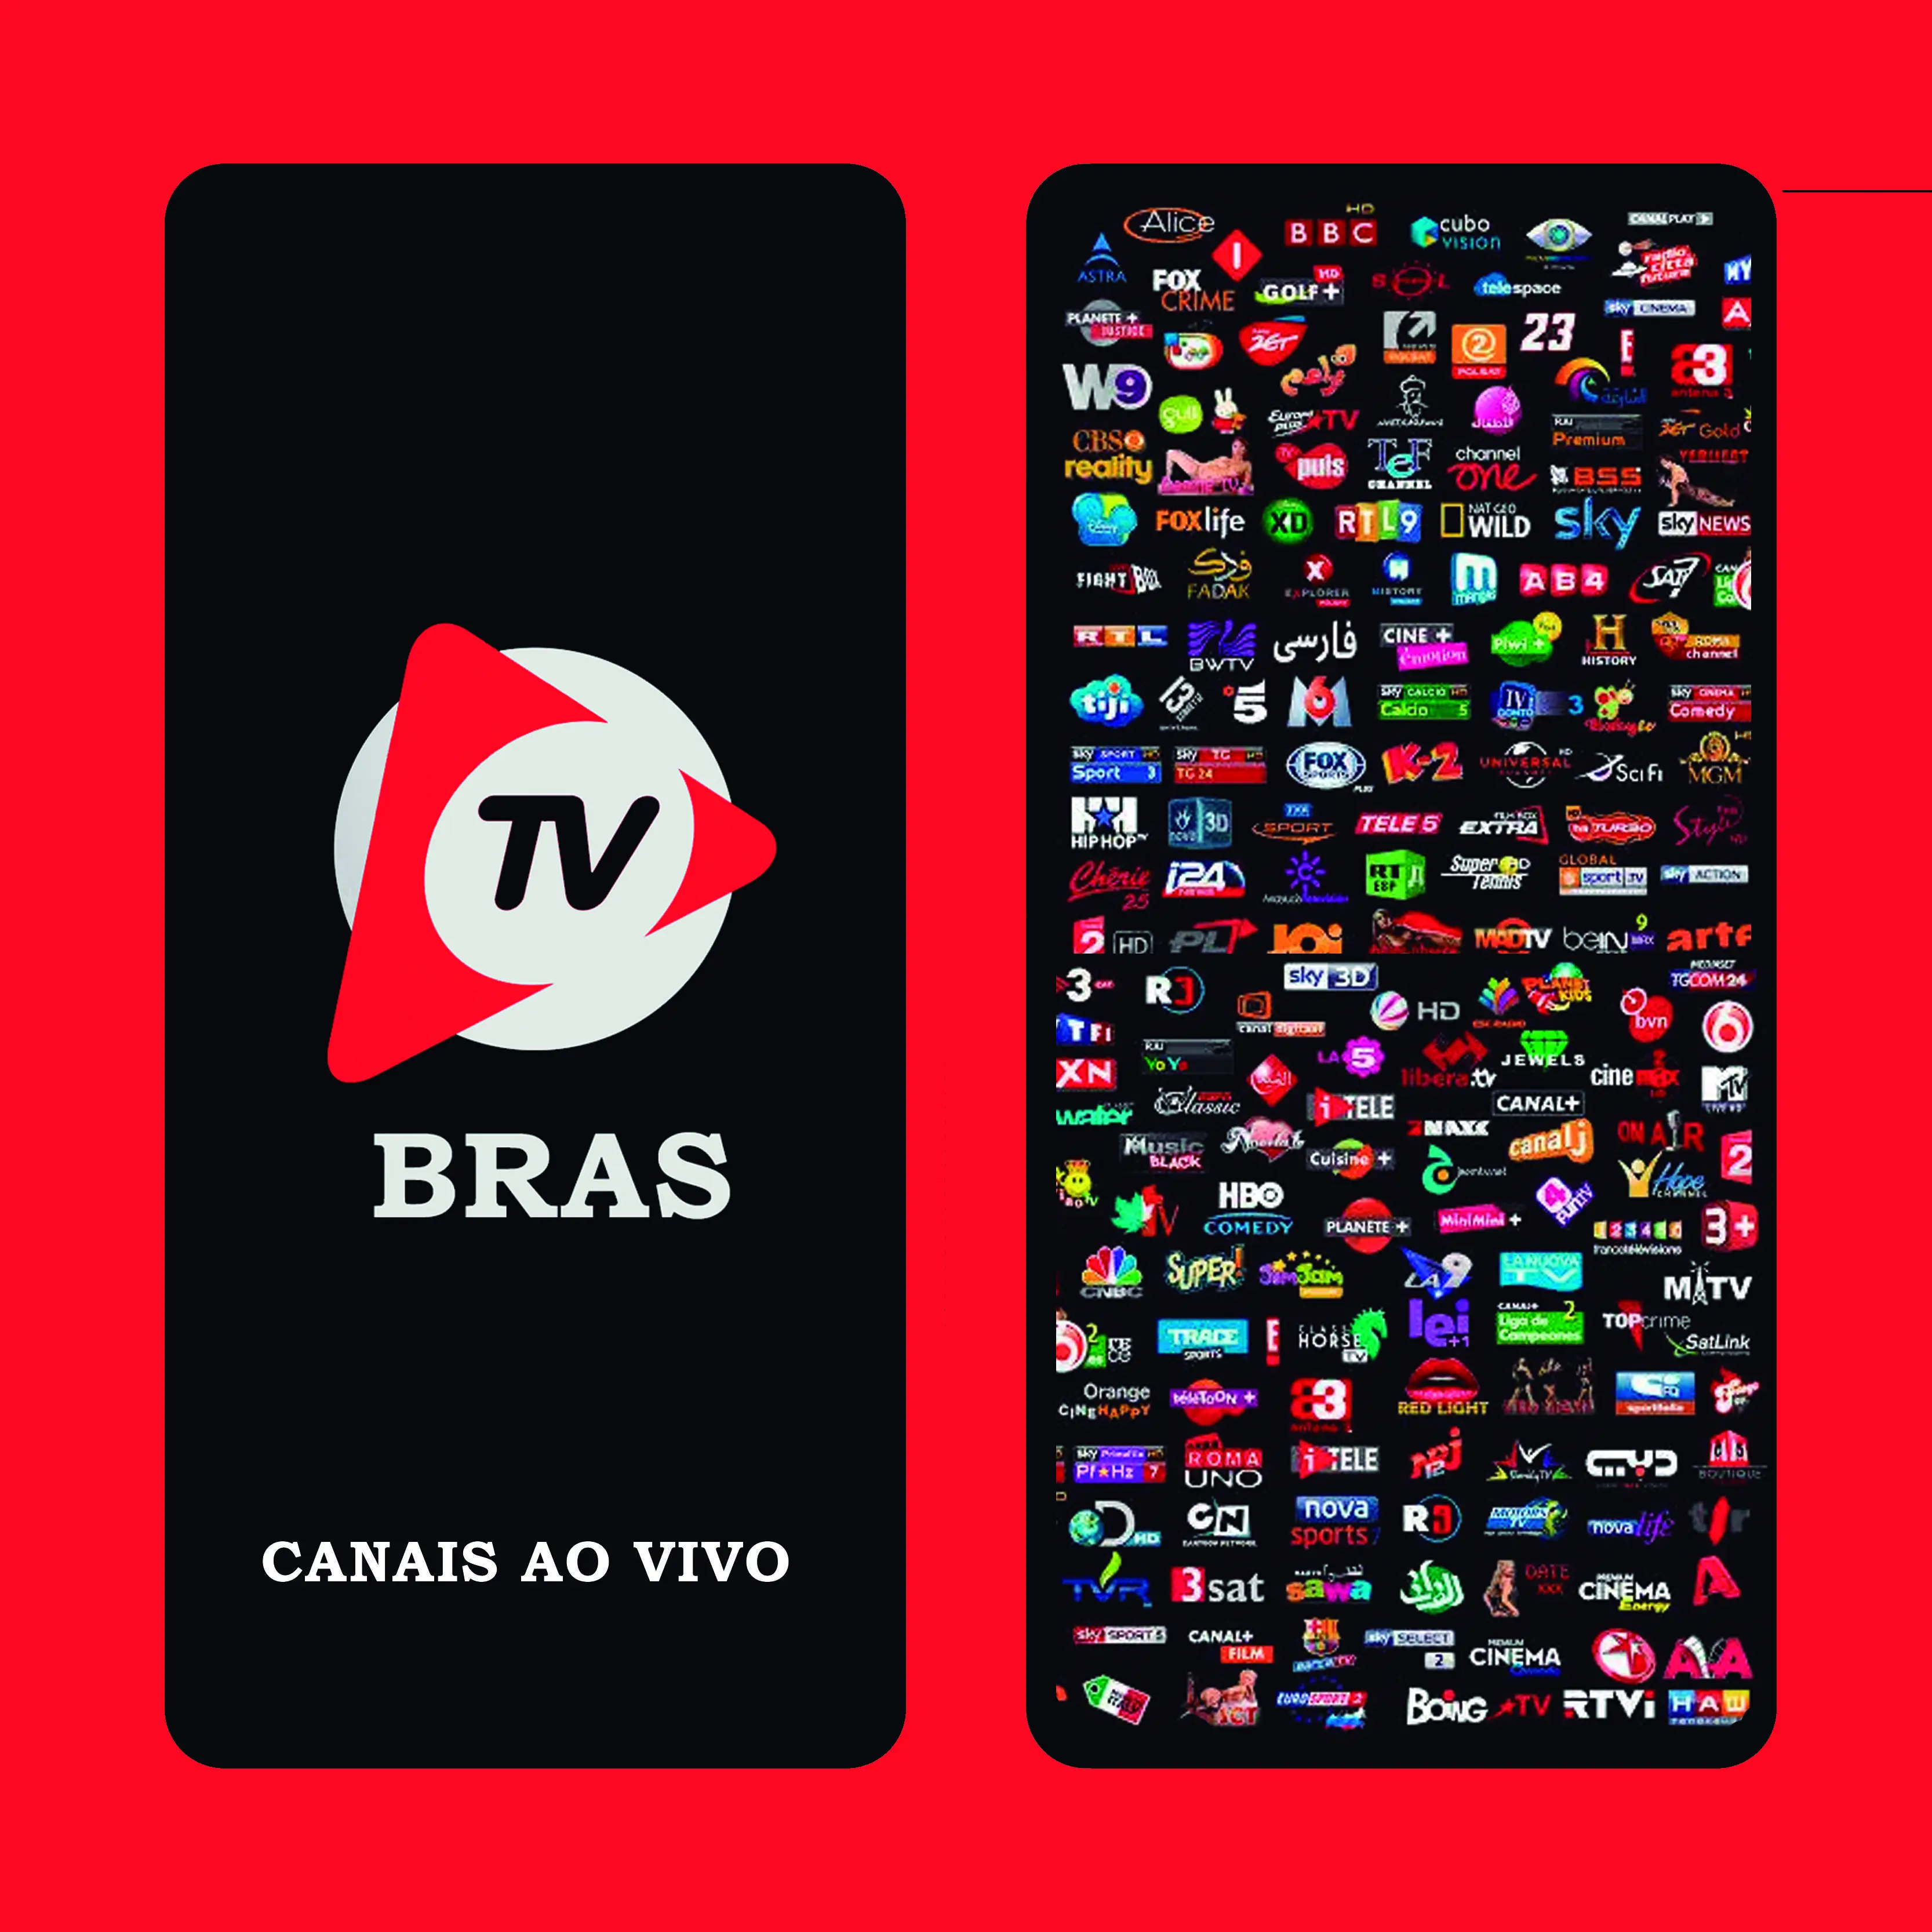 Download BRAS TV ao vivo canais ao vivo android on PC